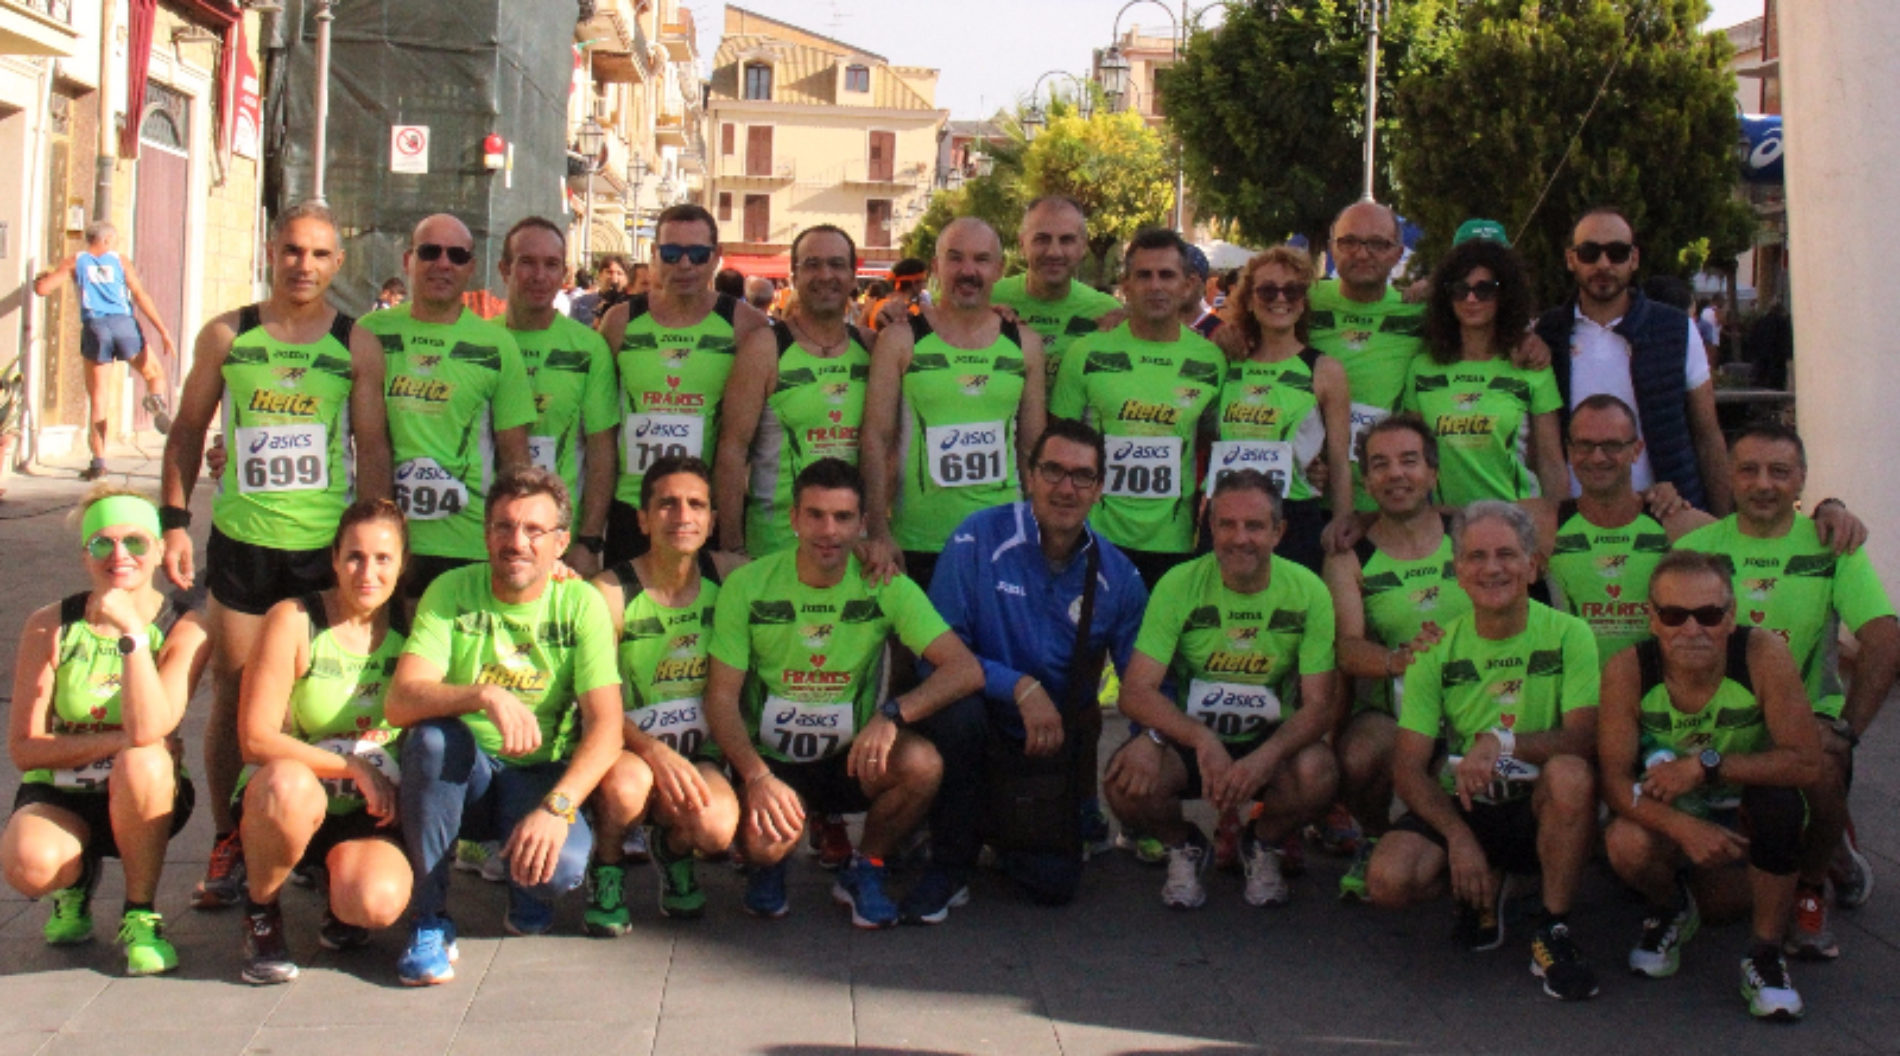 Delegazione di atleti barresi parteciperà domenica alla maratona di Firenze.